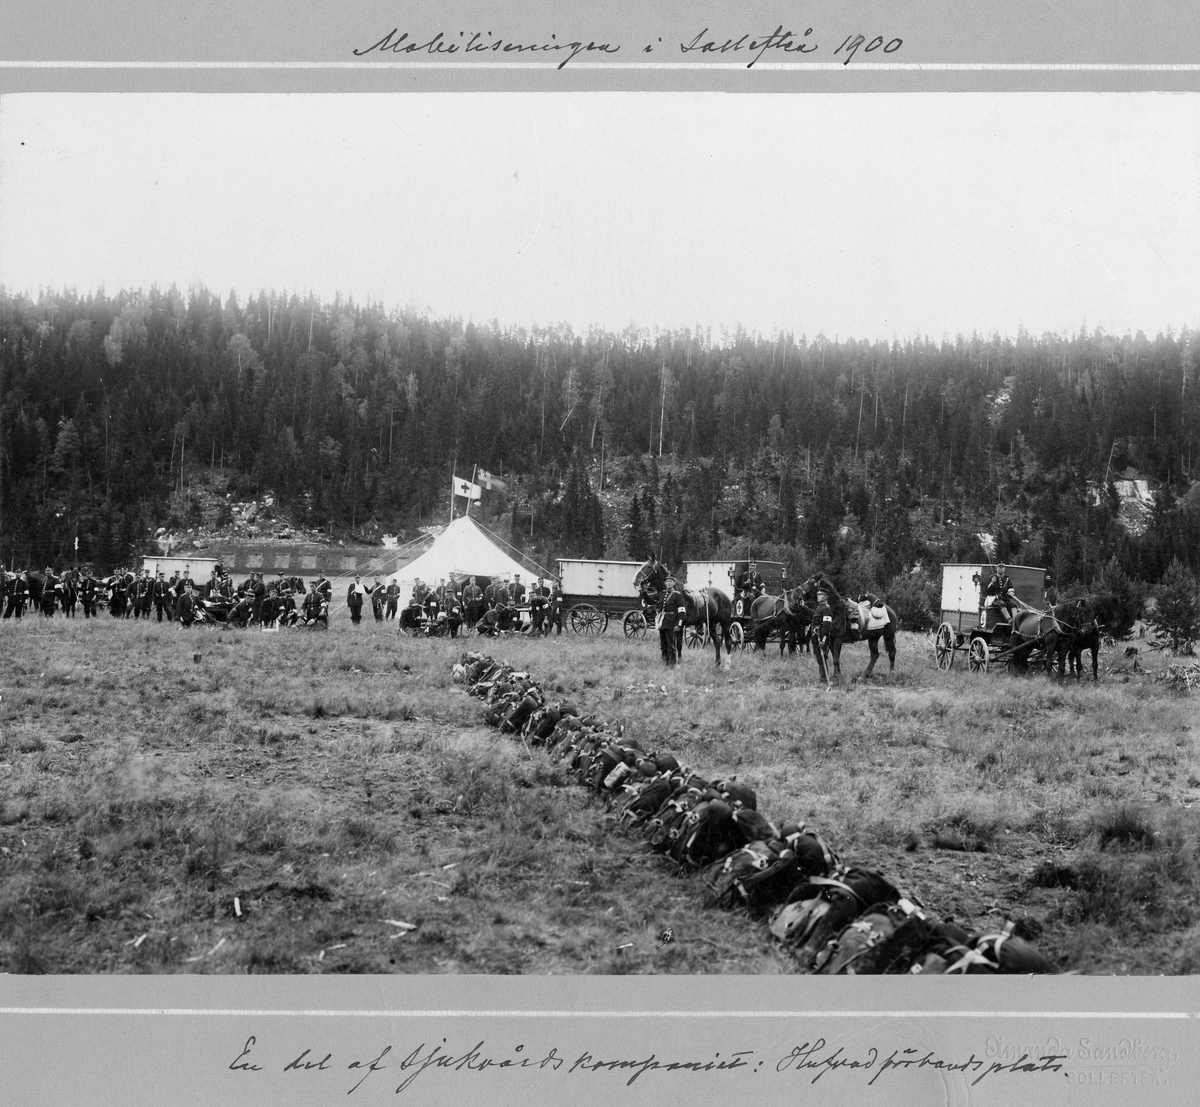 En del av sjukvårdskompaniet vid Västernorlands regemente I 28, övar vid Hutvad förbandsplats under mobiliseringen i Sollefteå 1900. I bakgrunden syns sjukvårdstält och sjukvårdskärror dragna av hästar.